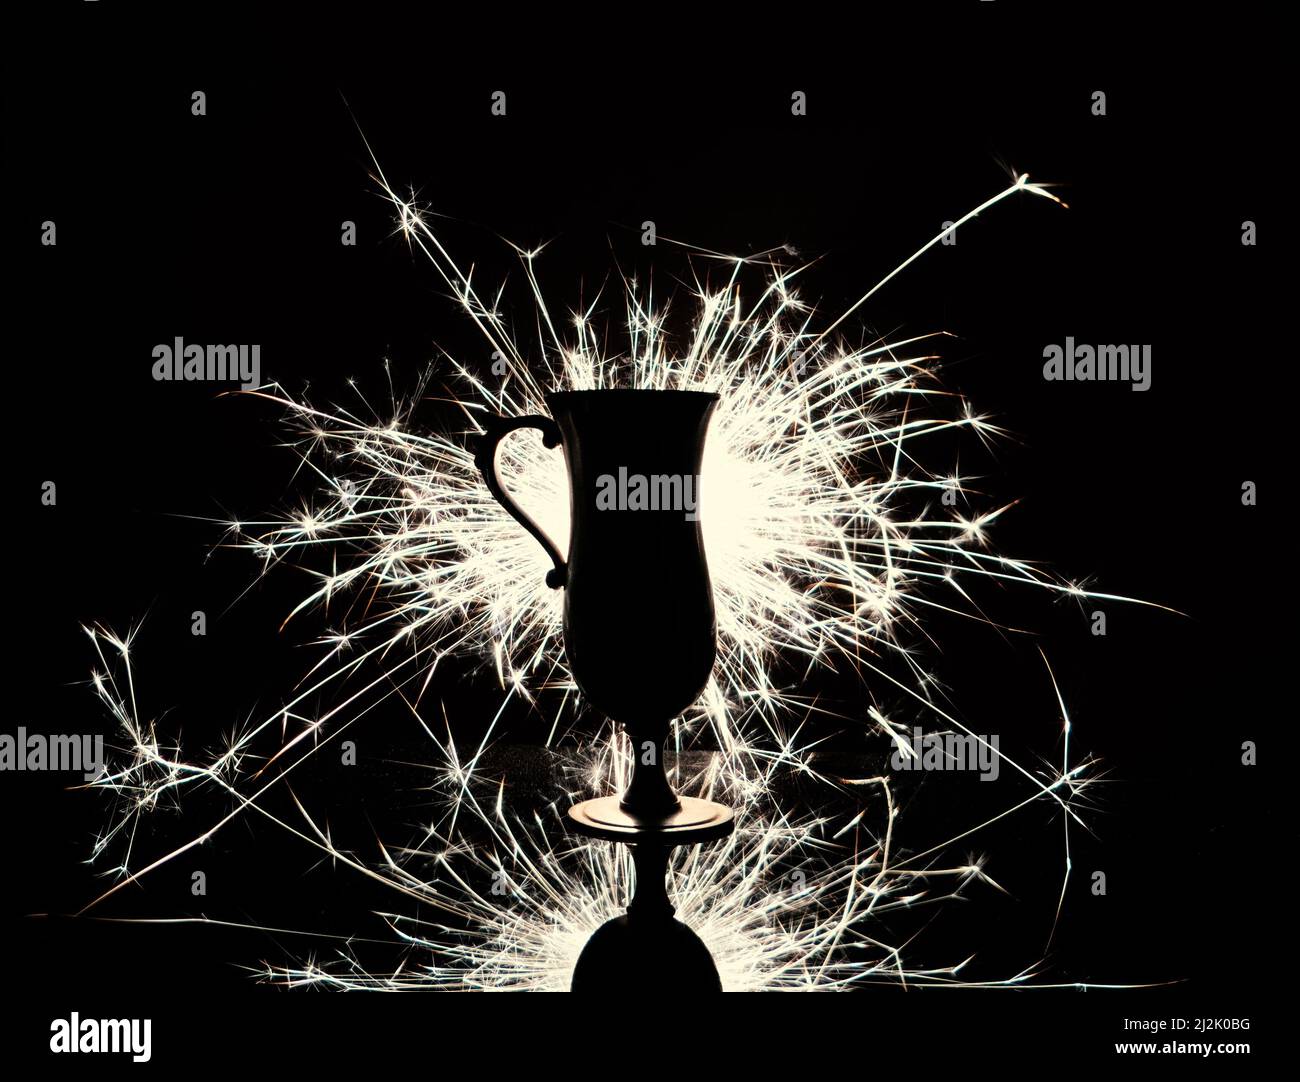 Coupe trophée silhouette sur fond d'étincelles brillantes. Monochrome. Banque D'Images